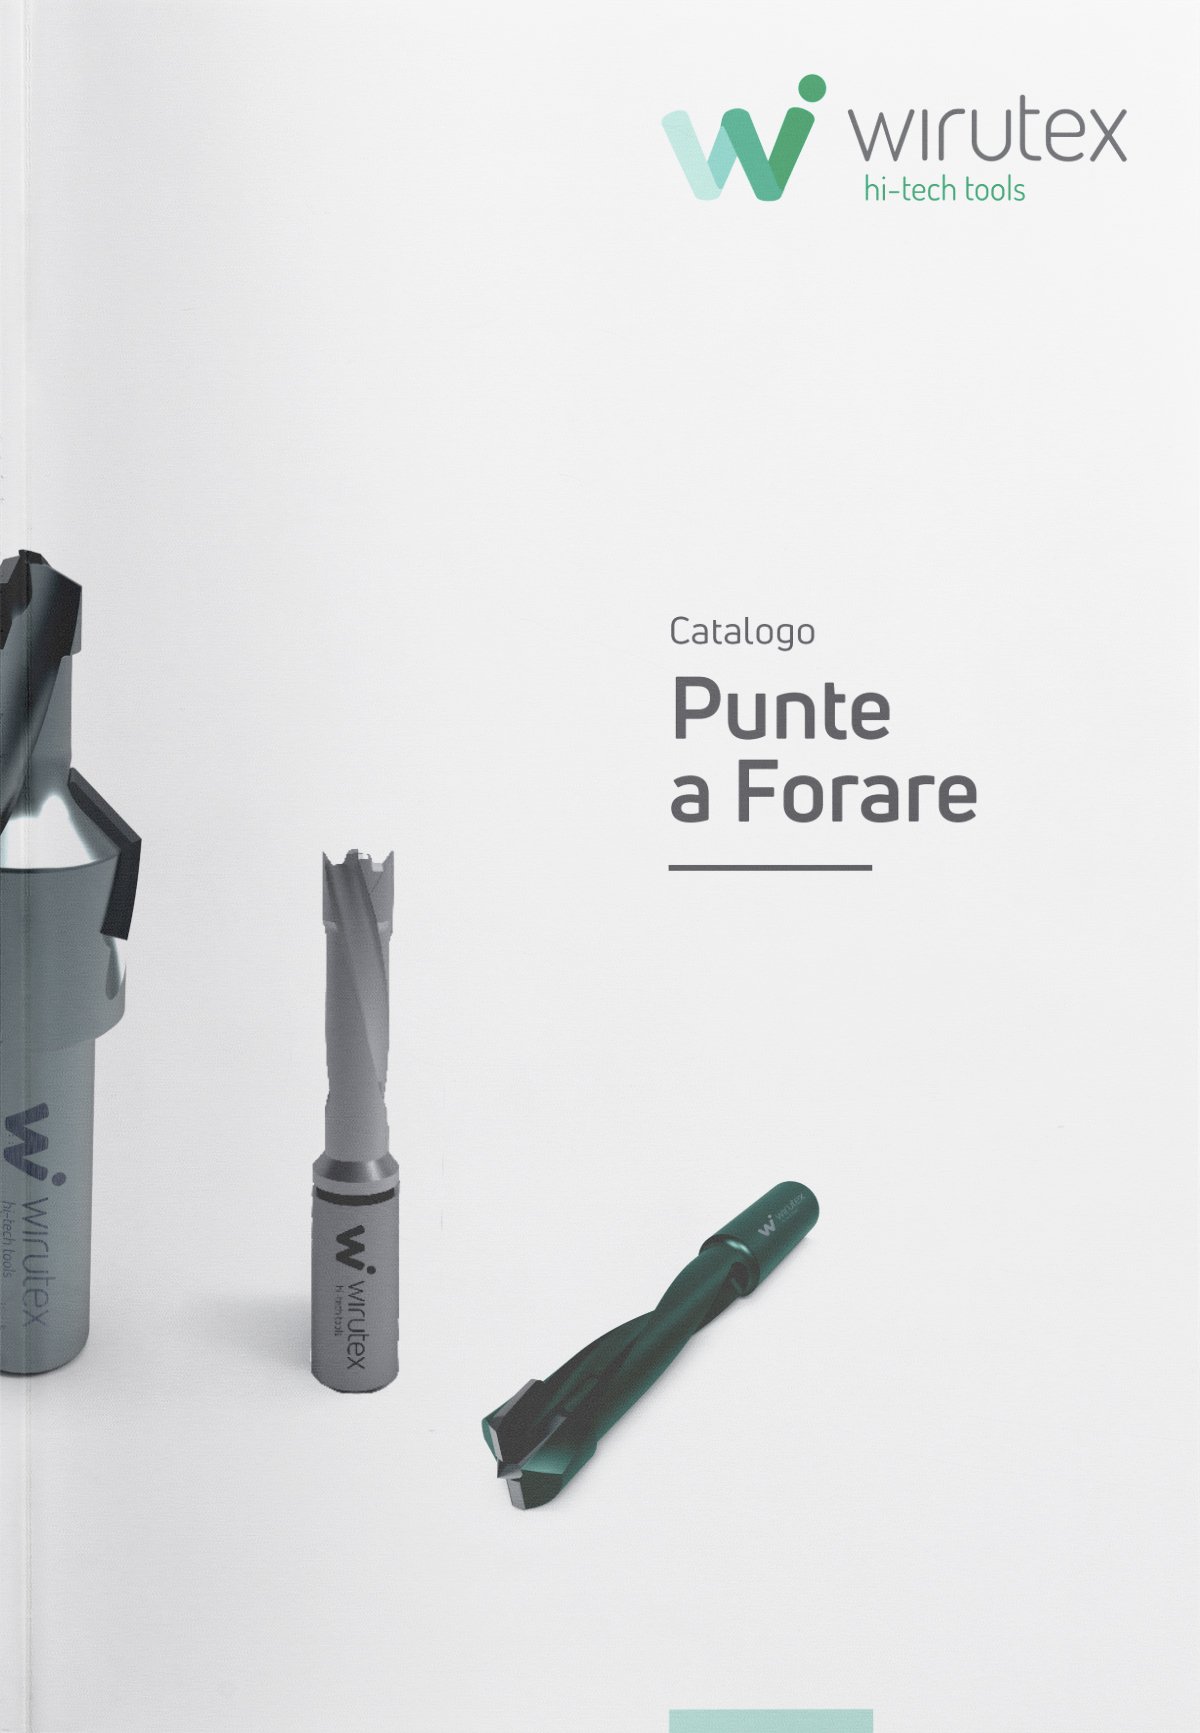 Wirutex-catalogo-punte-a-forare-p02-2020